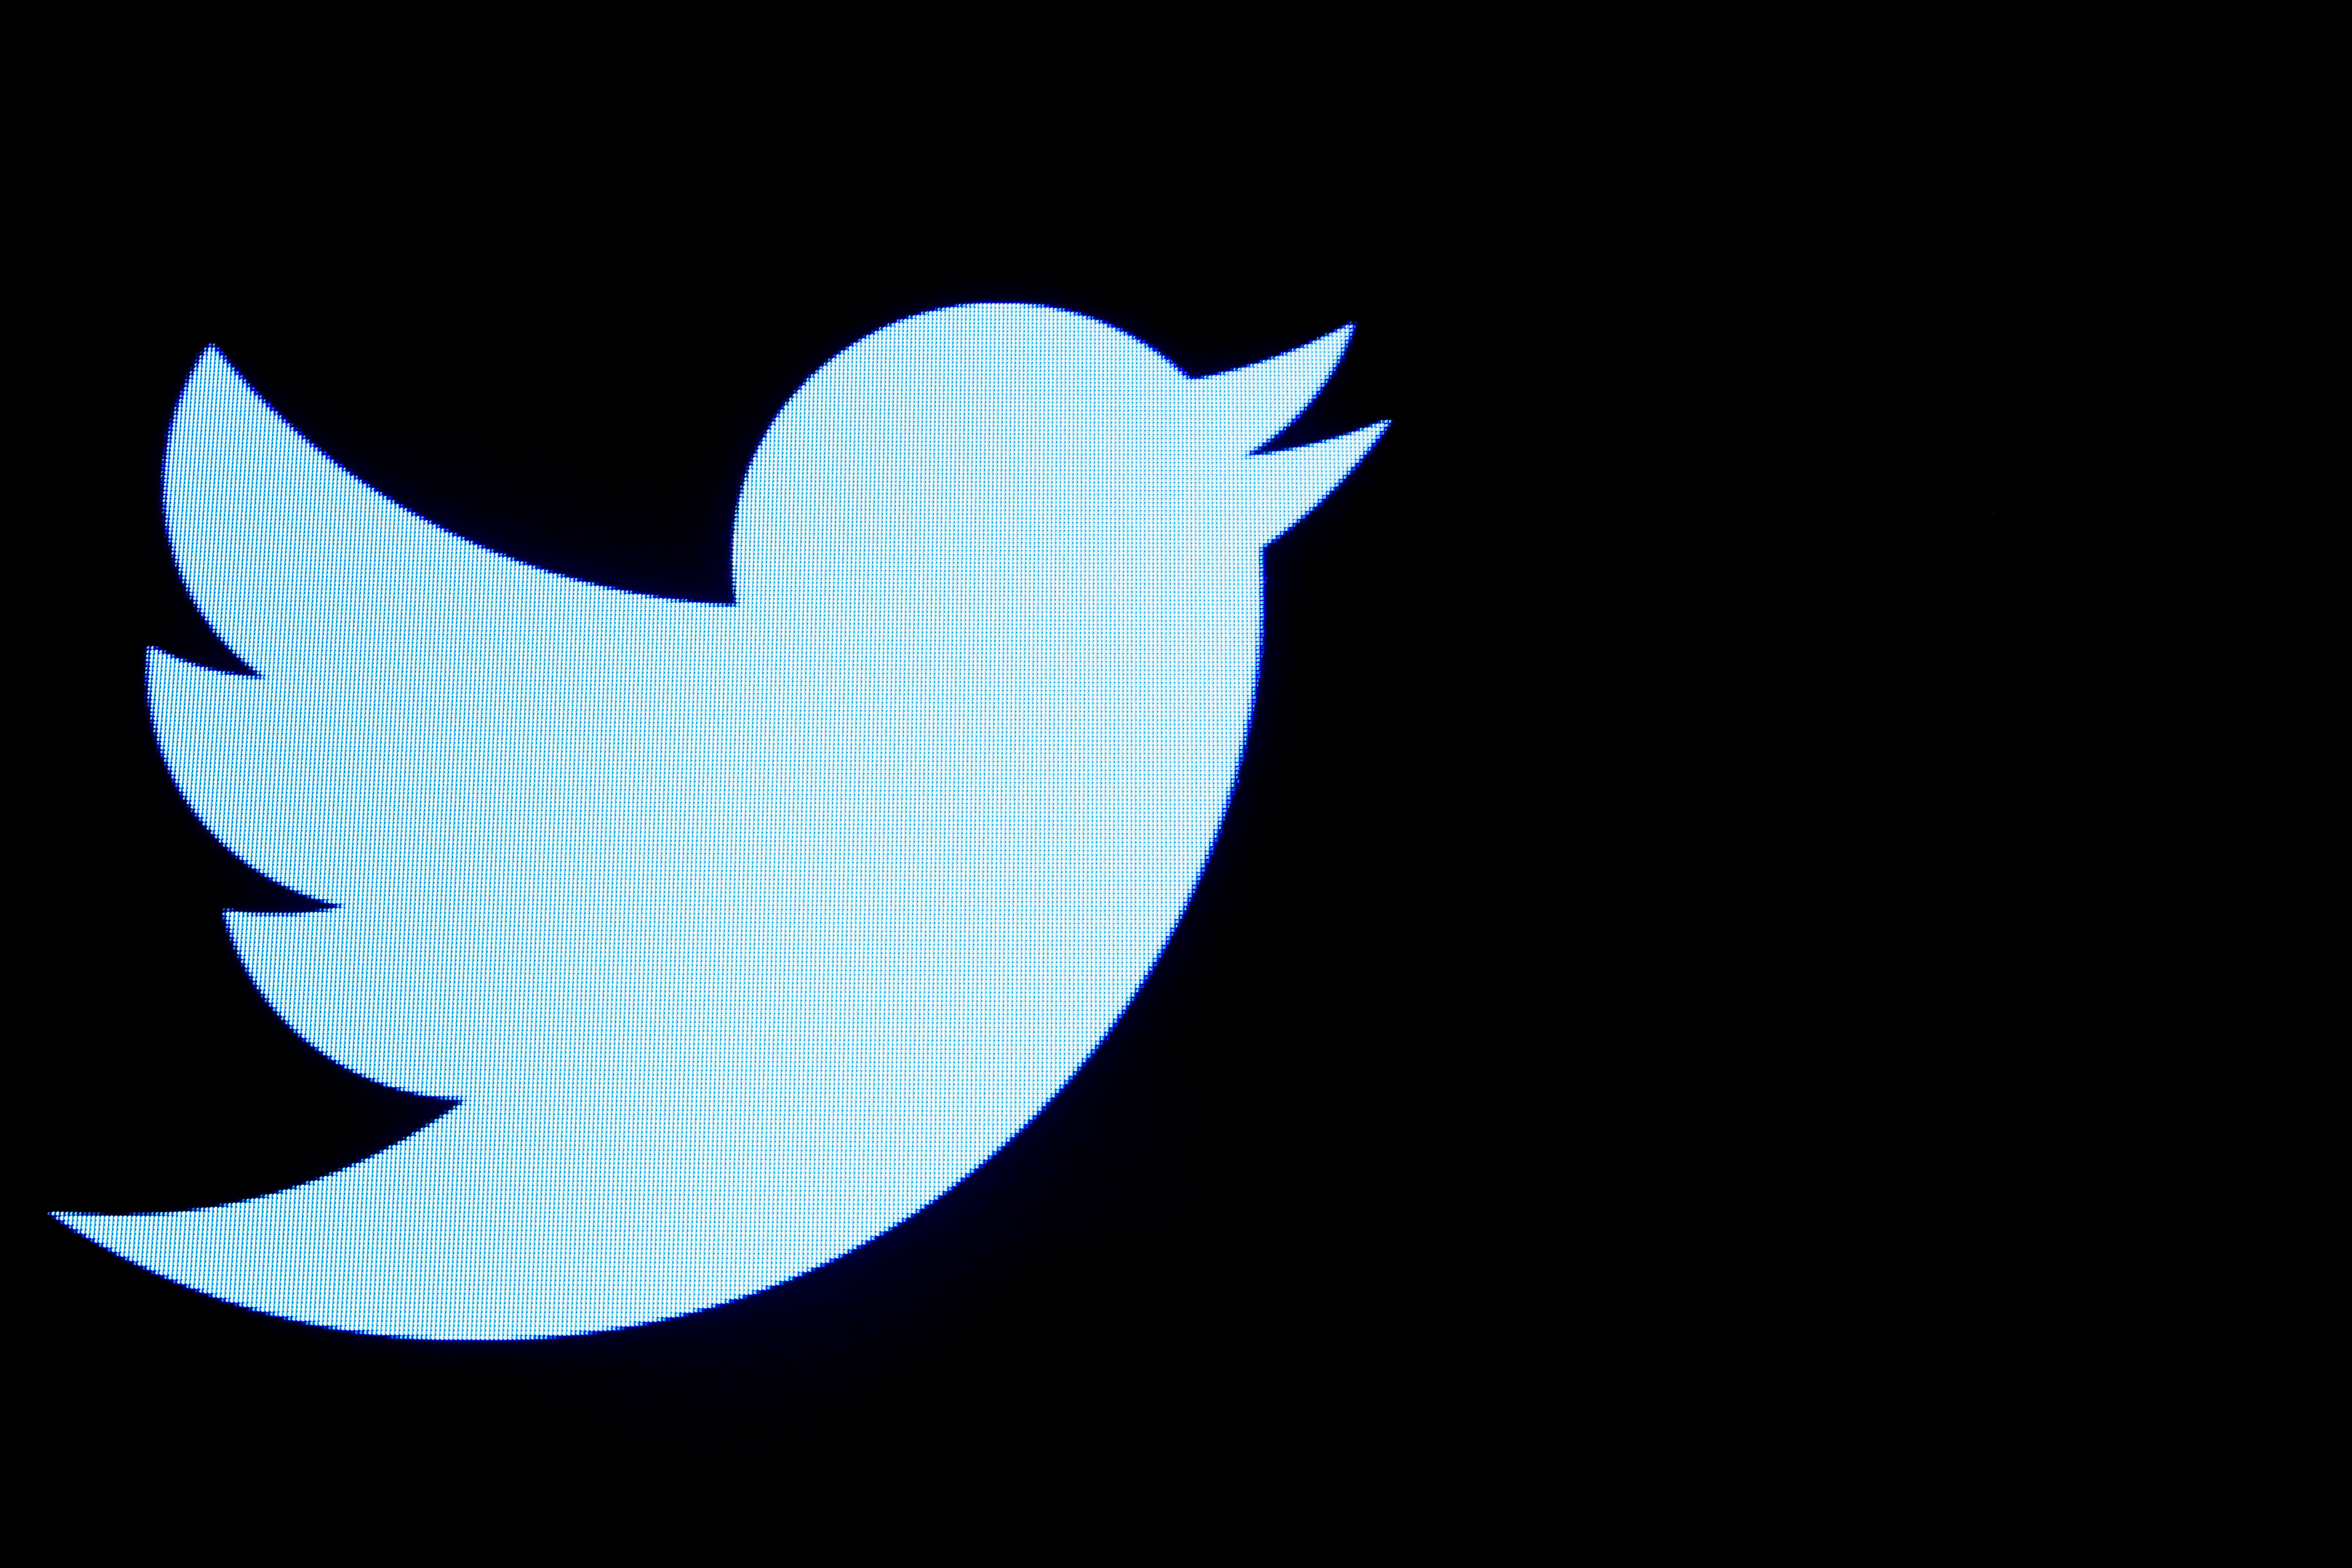 Twitter creuse ses pertes à cause du Covid-19